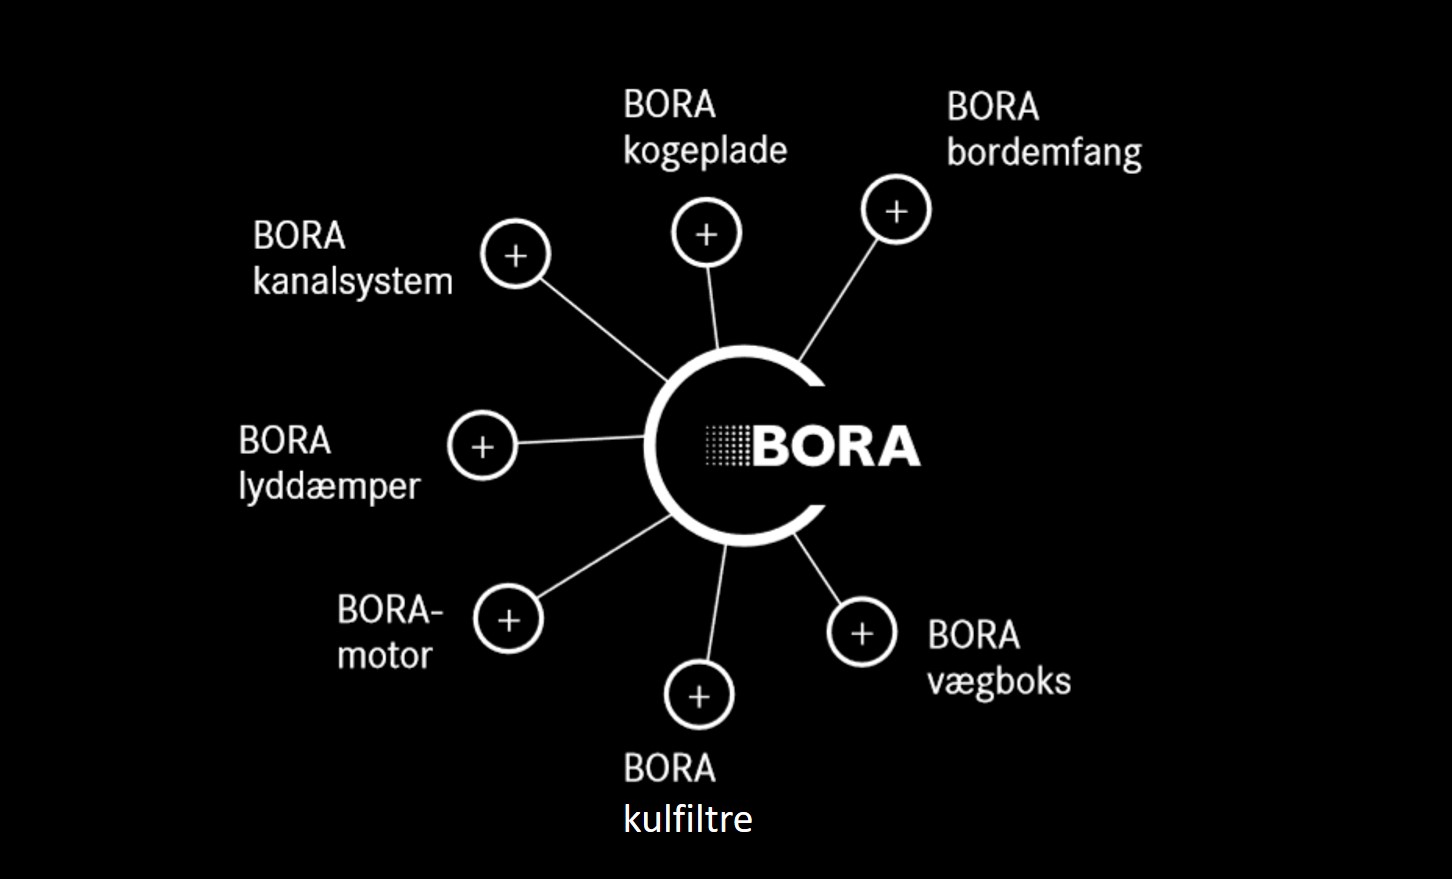 bordemfang BORA - et komplet emfangsystem med kvalitet ned til mindste detalje